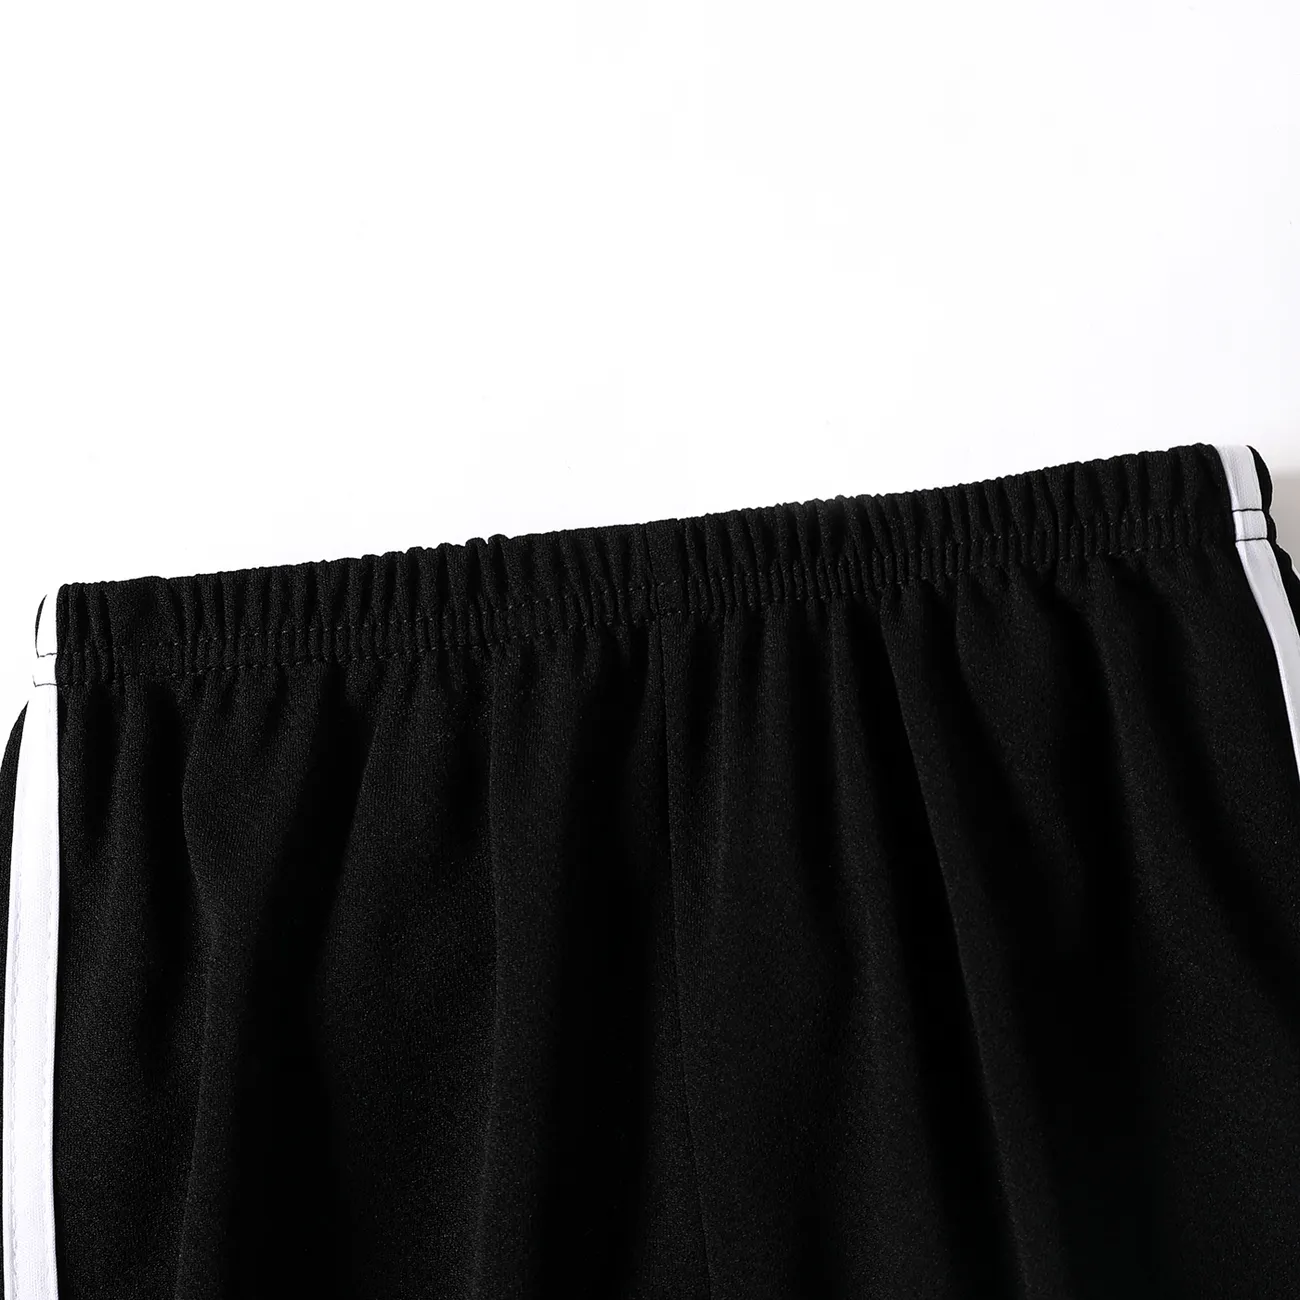 Pantalones finos hasta el tobillo transpirables a rayas deportivas para niño/niña para verano/otoño Negro big image 1